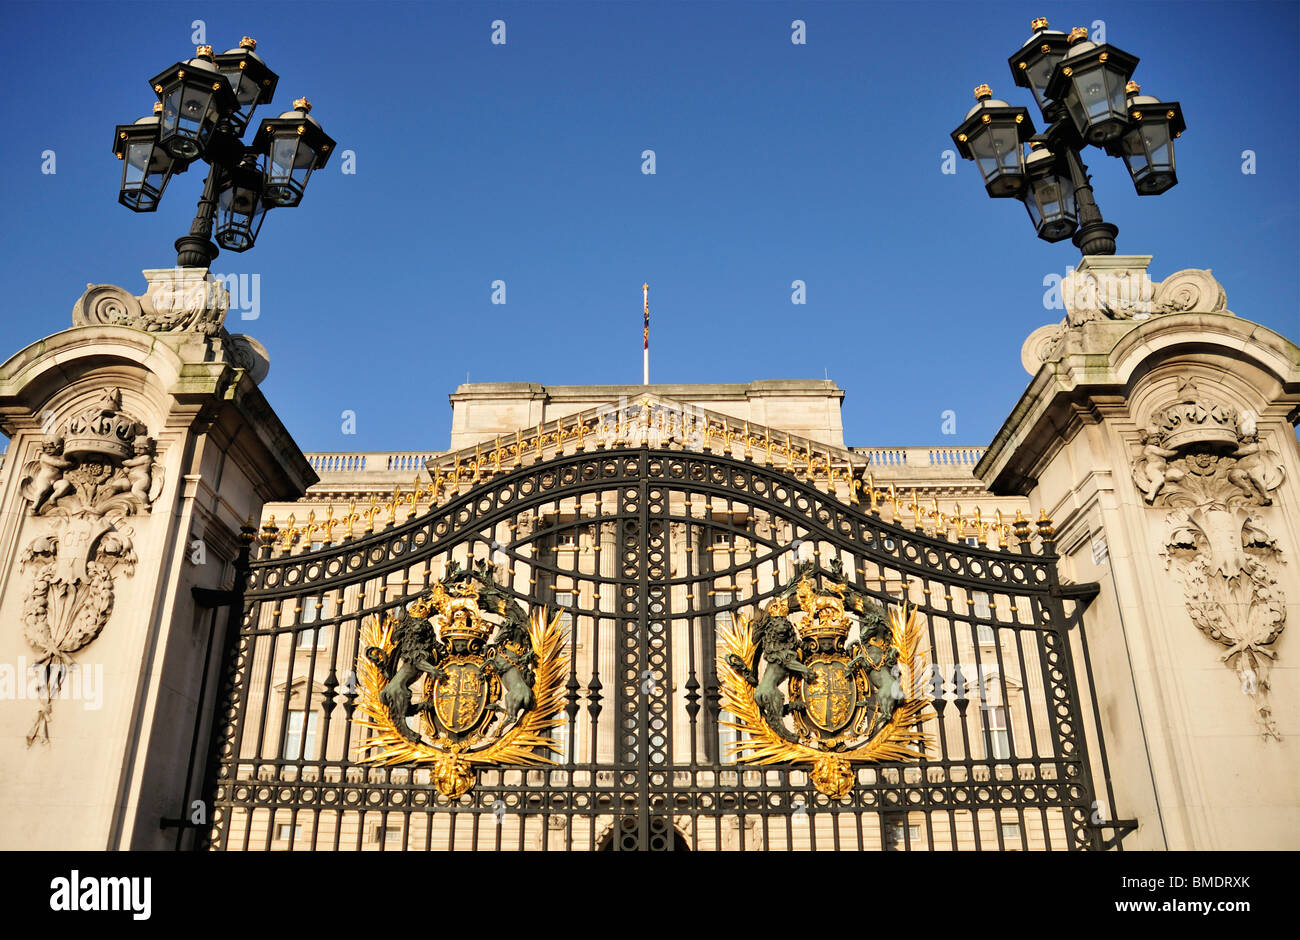 Buckingham Palace, London, United Kingdom Stock Photo